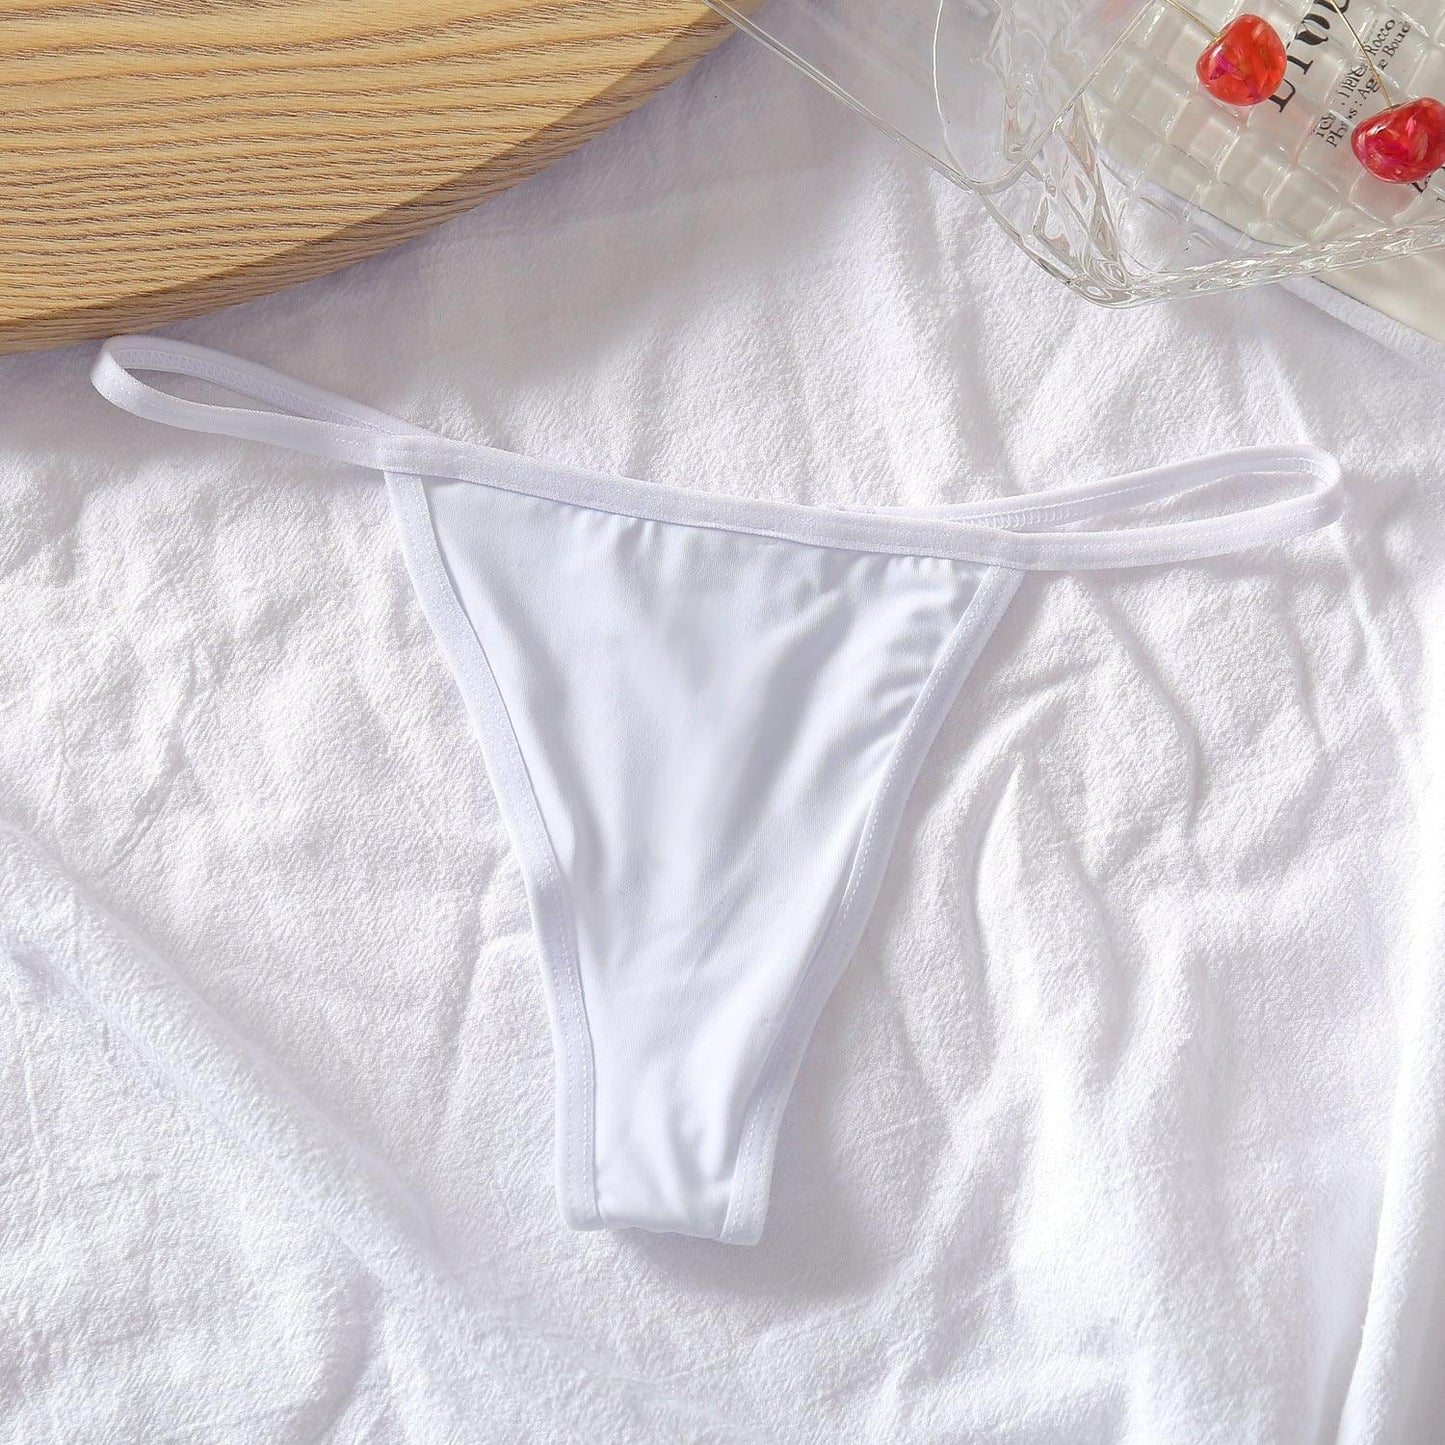 Sexy Cotton Thong for Women - ForVanity underwear, women's lingerie Underwear